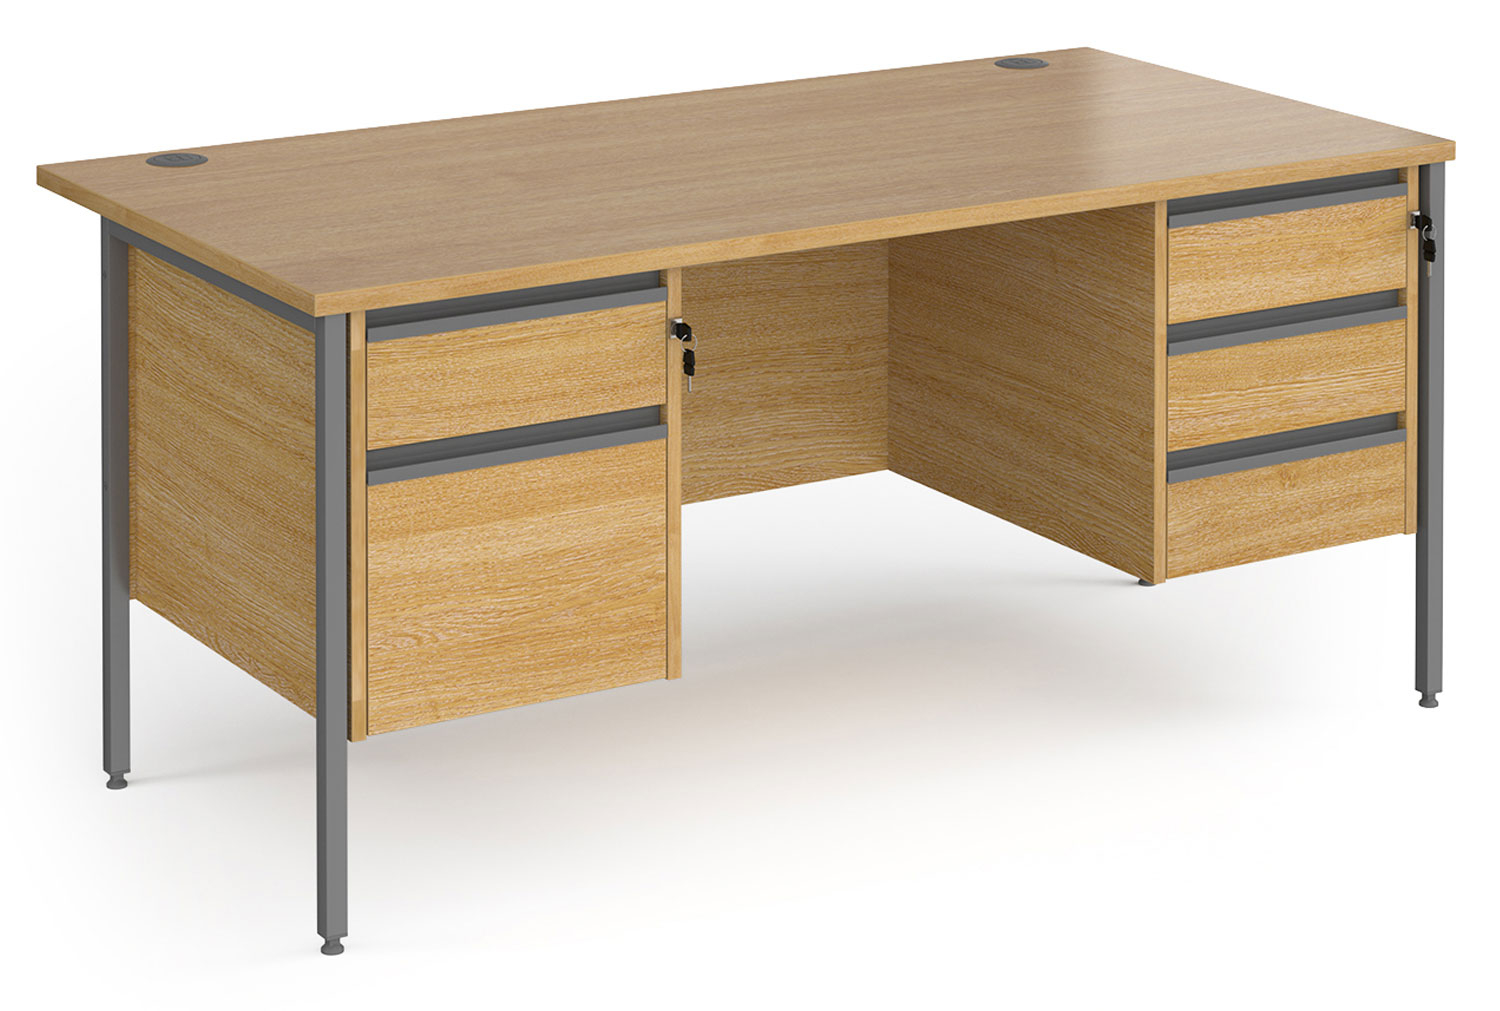 Value Line Classic+ Rectangular H-Leg Office Desk 2+3 Drawers (Graphite Leg), 160wx80dx73h (cm), Oak, Fully Installed